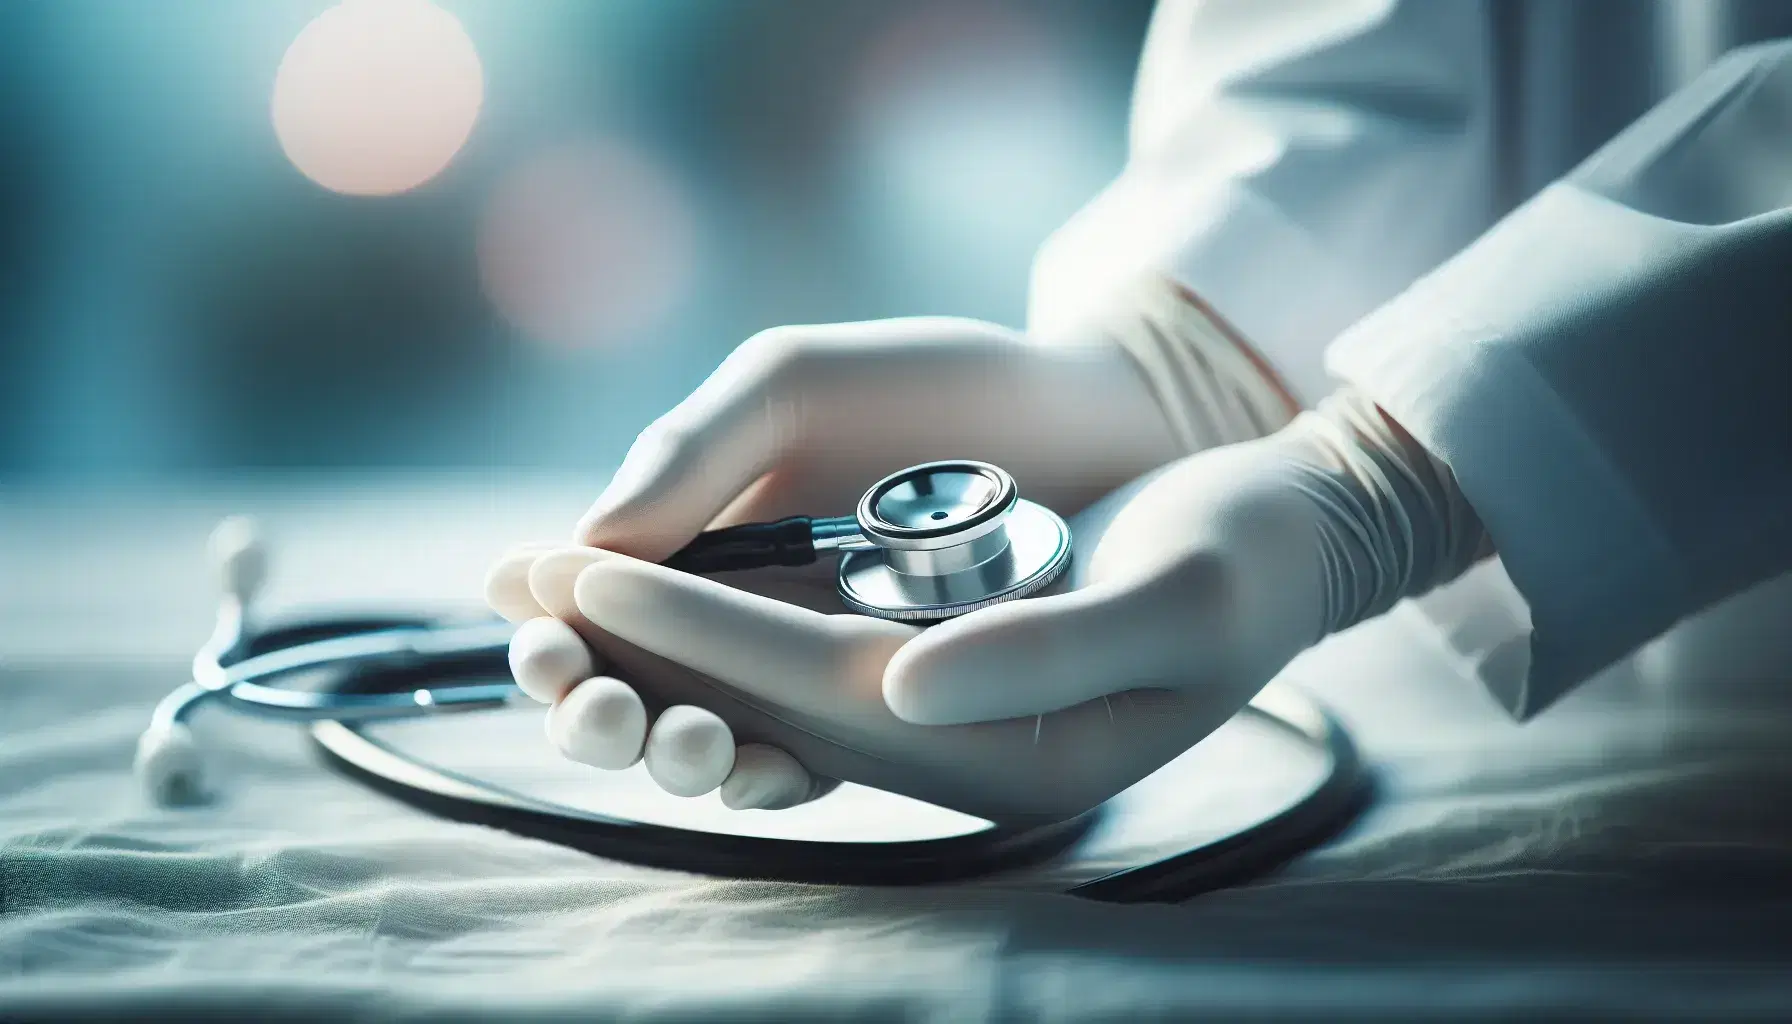 Manos con guantes de enfermería sujetando un estetoscopio sobre fondo desenfocado en tonos azules y verdes, transmitiendo profesionalismo y cuidado médico.